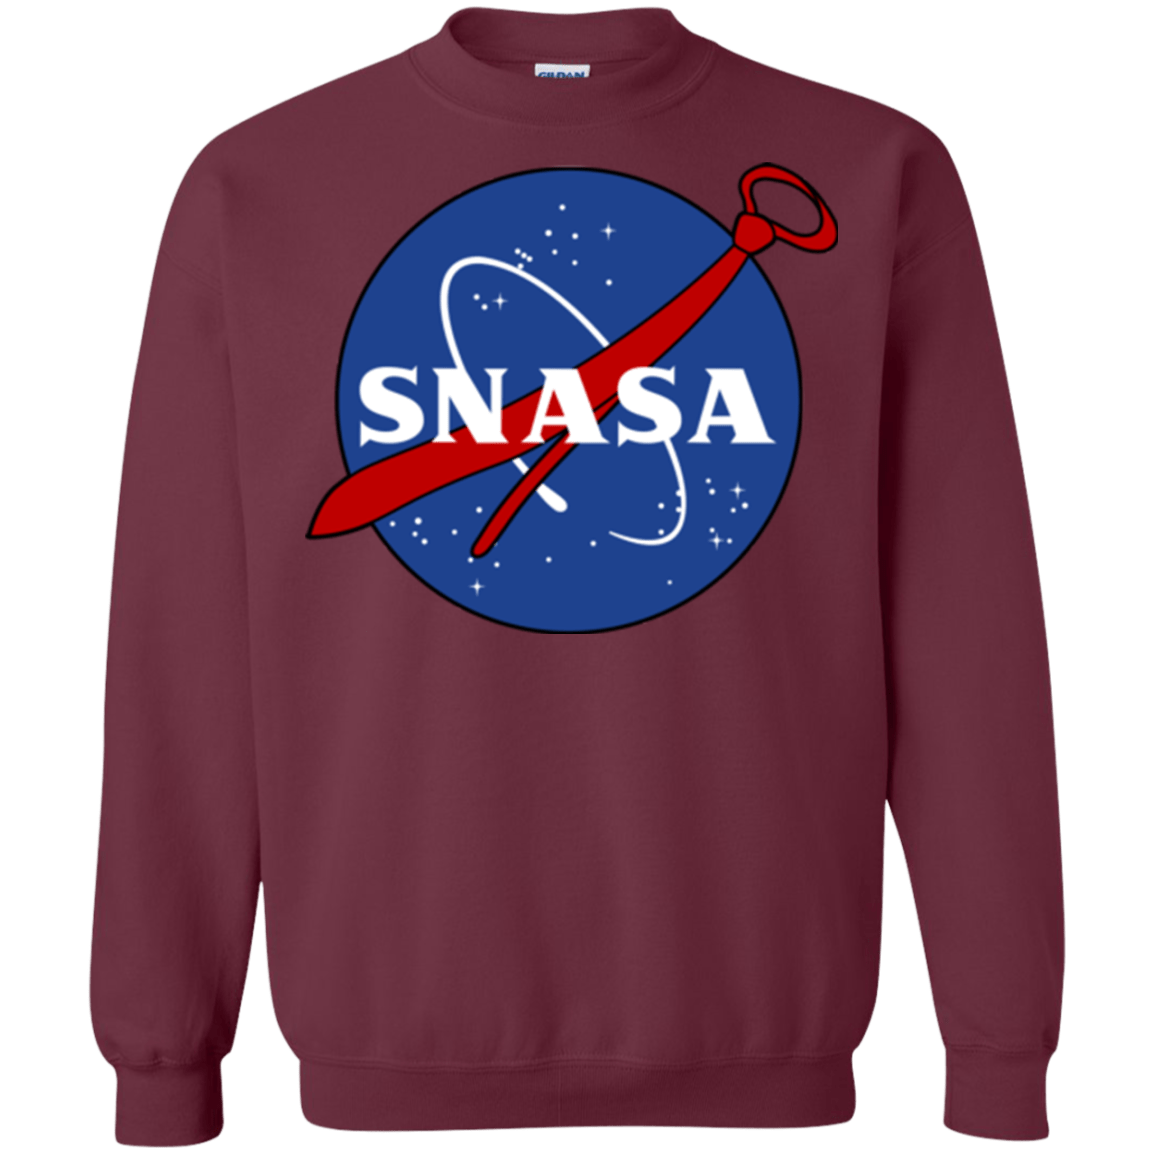 Sweatshirts Maroon / Small SNASA Crewneck Sweatshirt